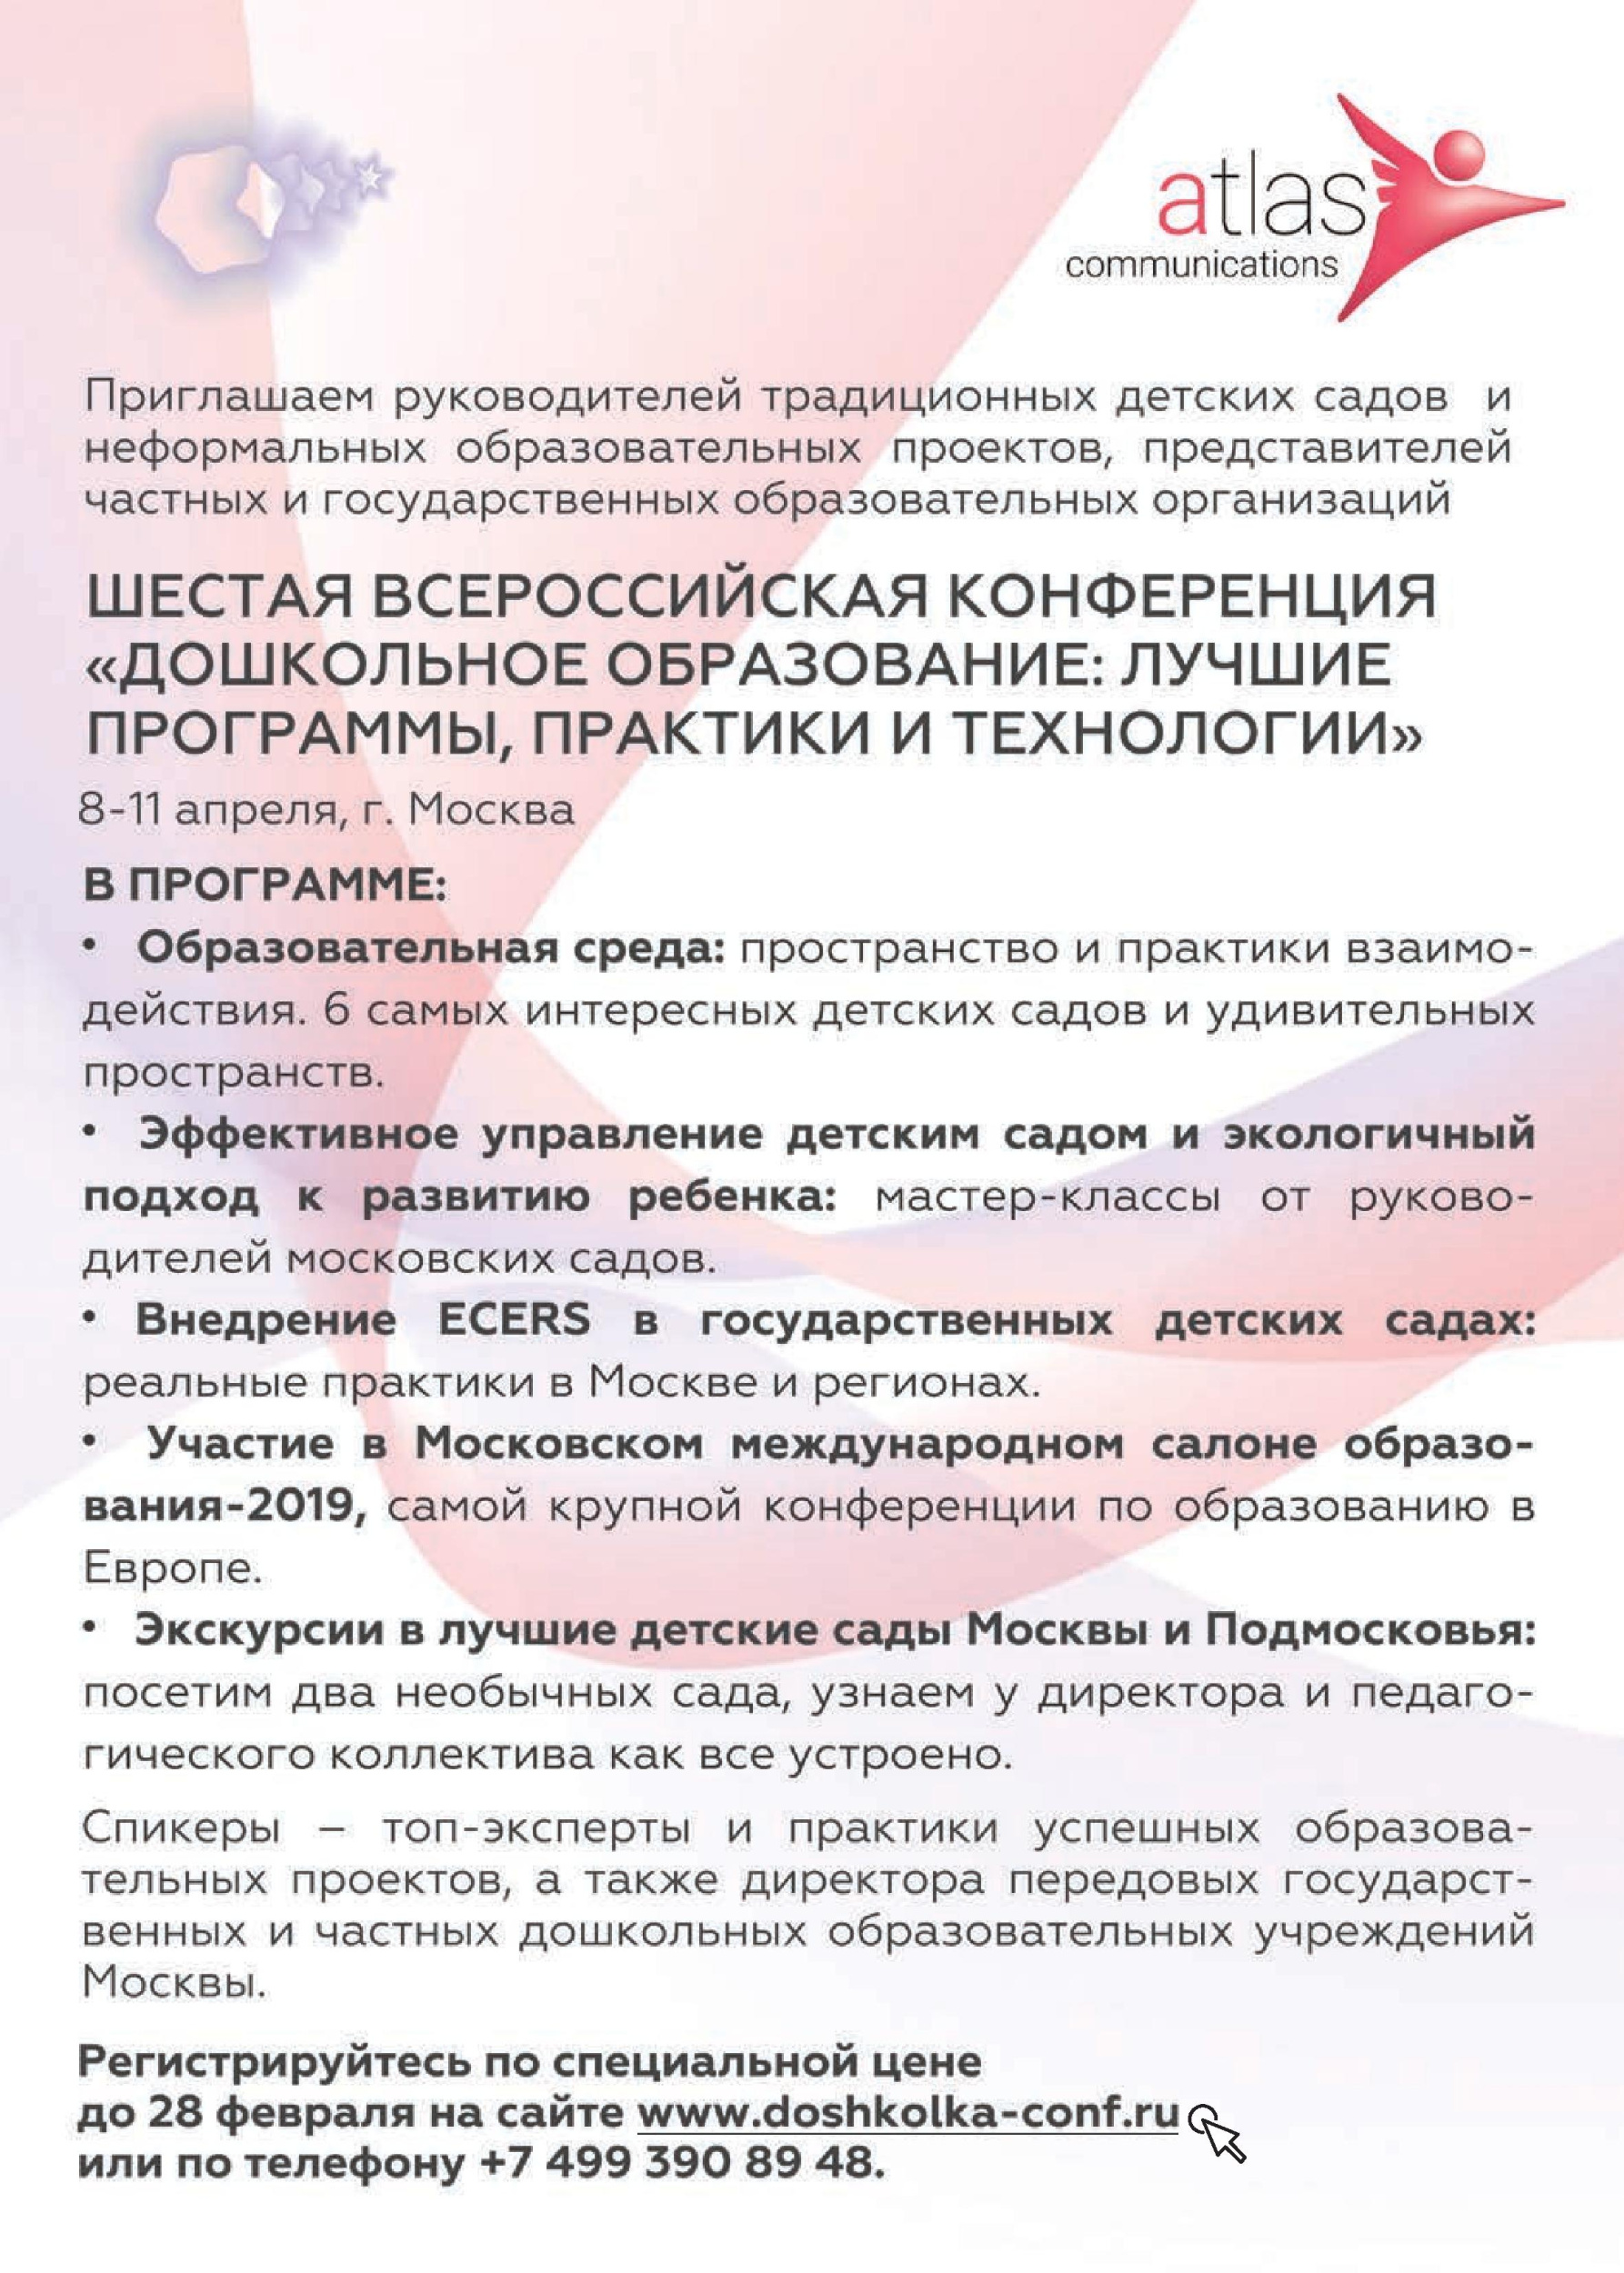 Шестая всероссийская конференция "Дошкольное Образование": лучшие программы, практики и технологии